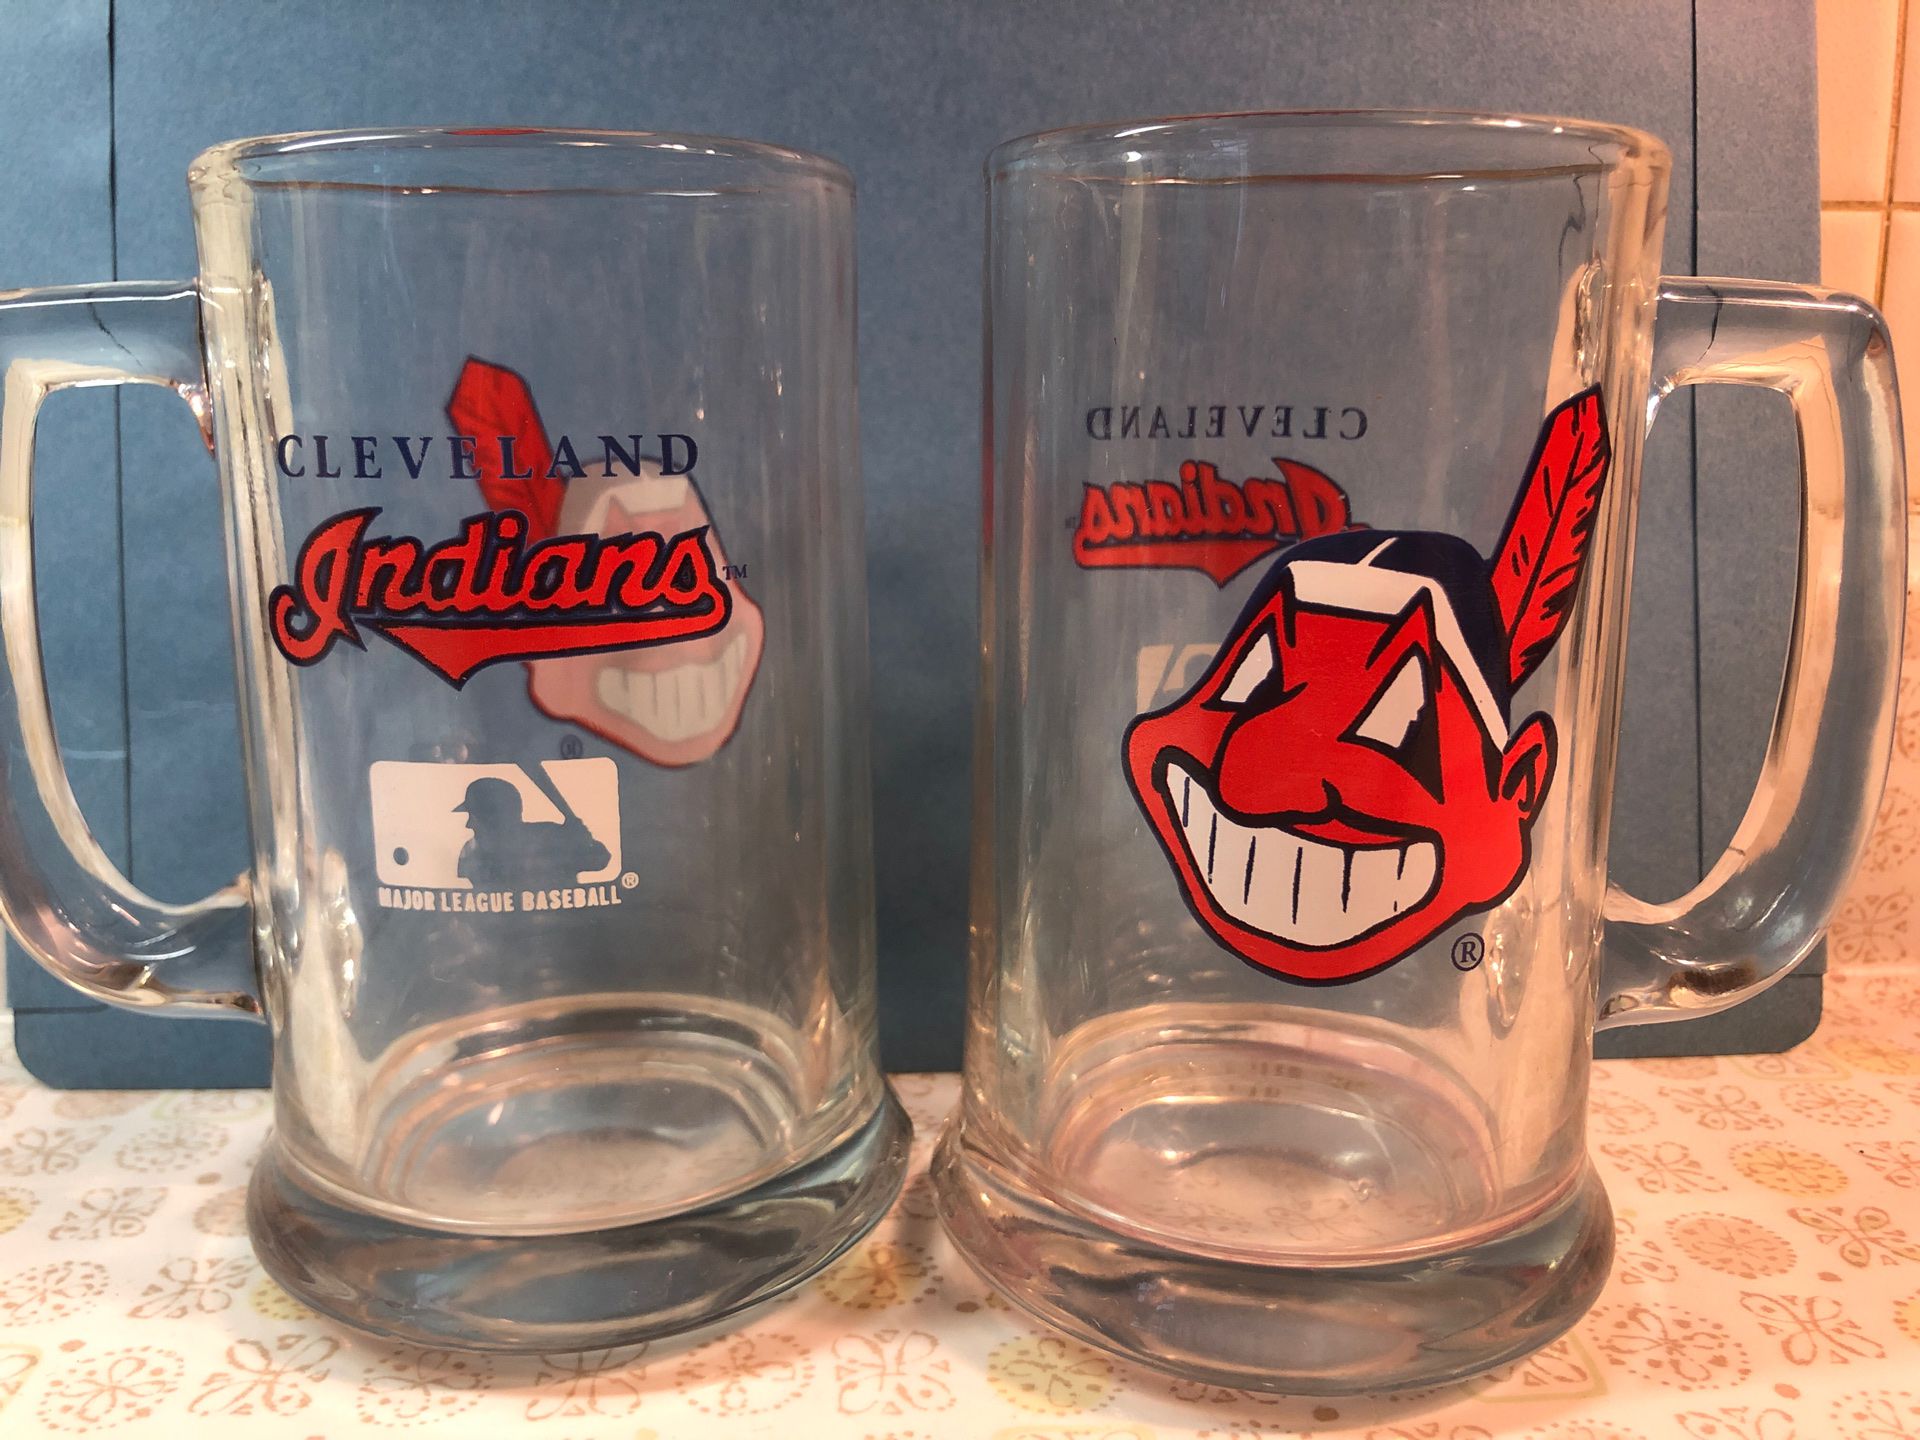 2 Vintage Cleveland Indians glass beer mugs